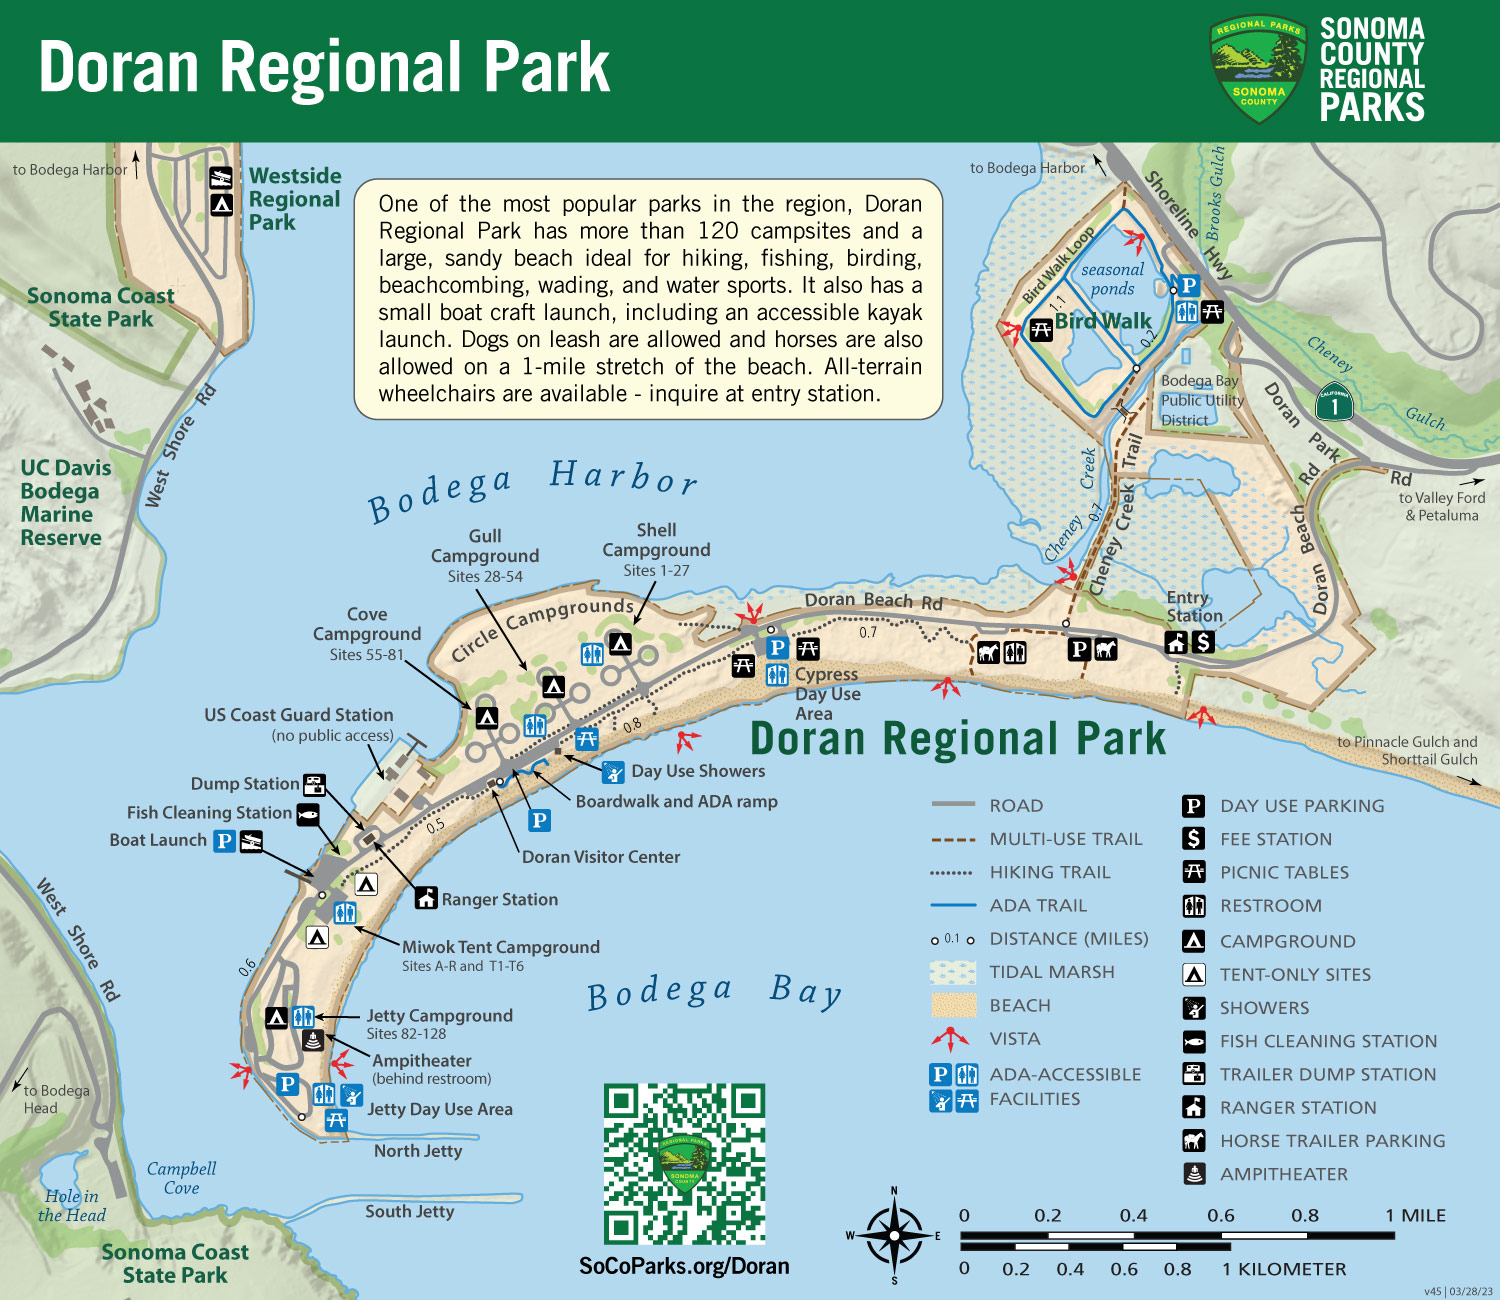 Doran and Bird Walk Coastal Access Trail Map